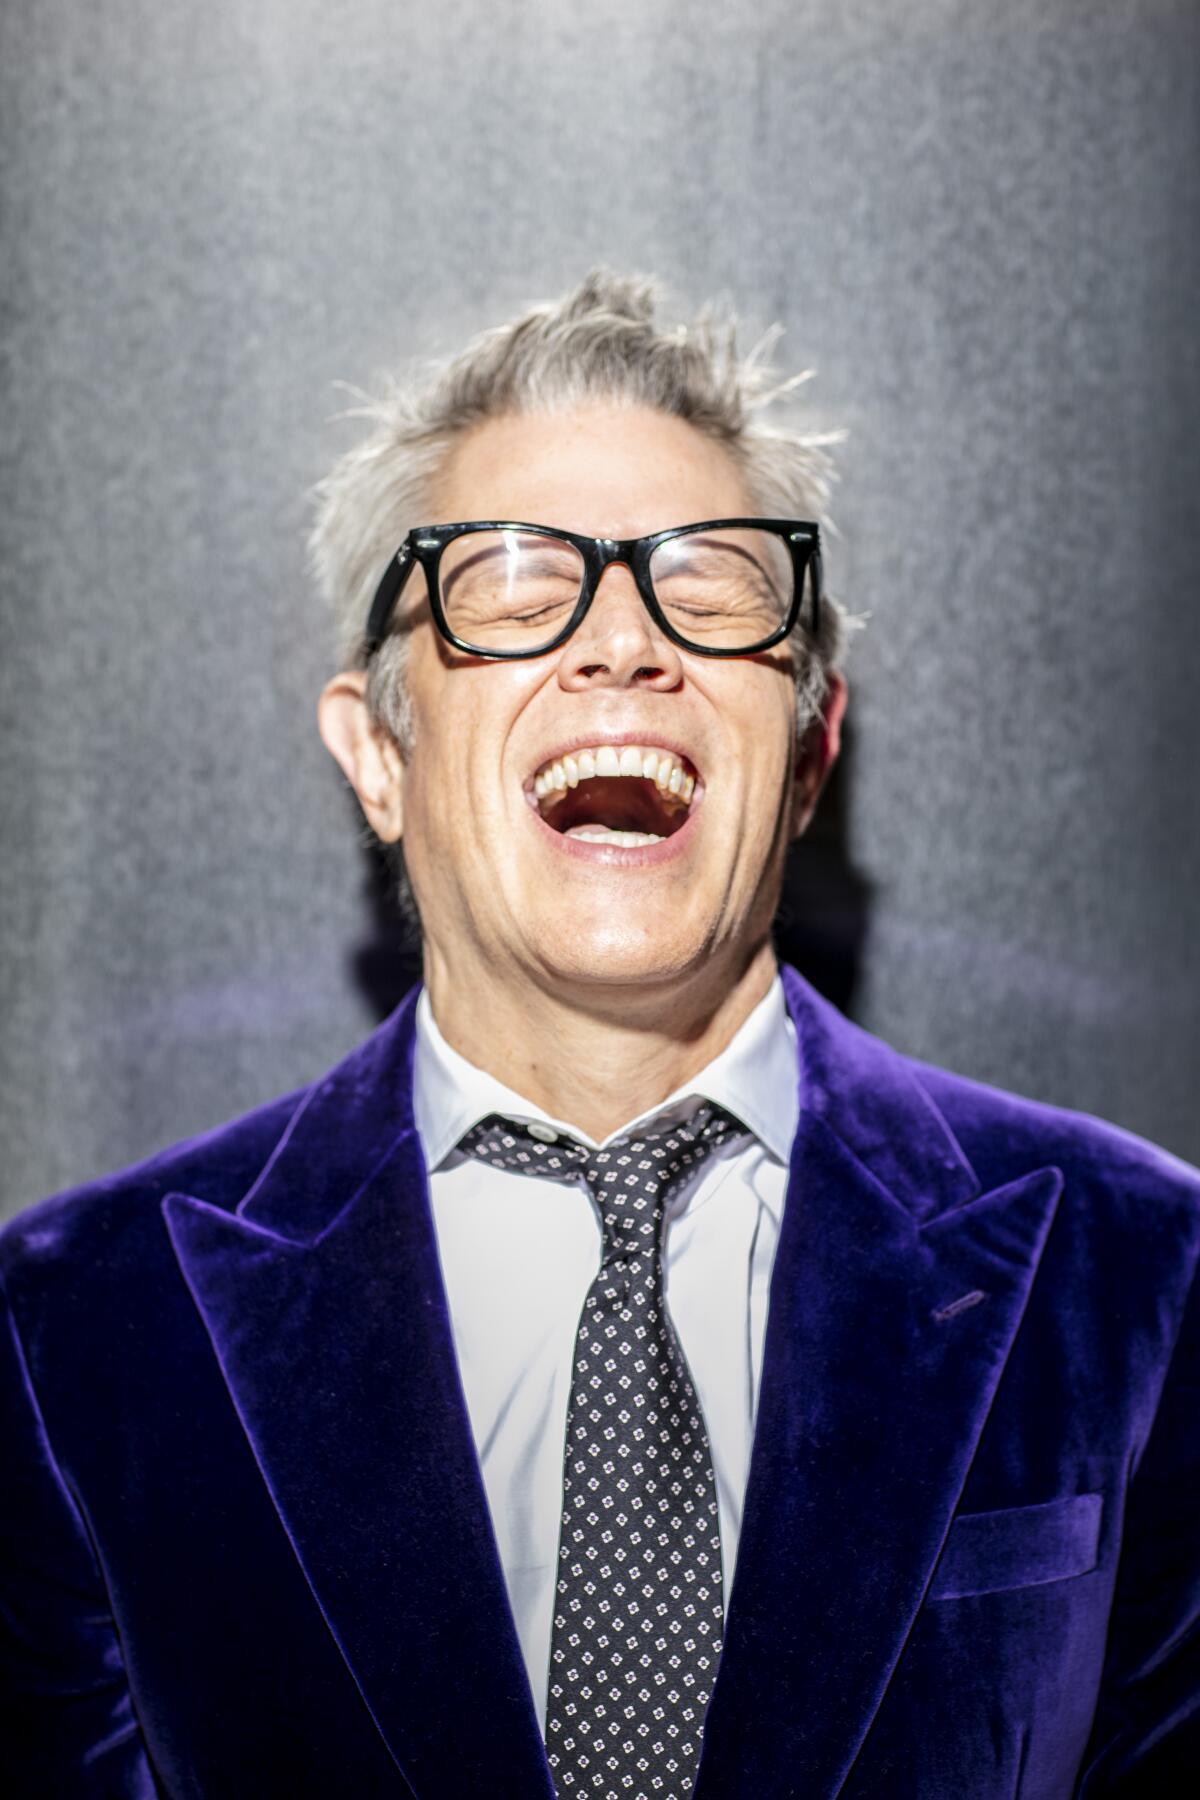 A man in a purple suit jacket laughs for a portrait.